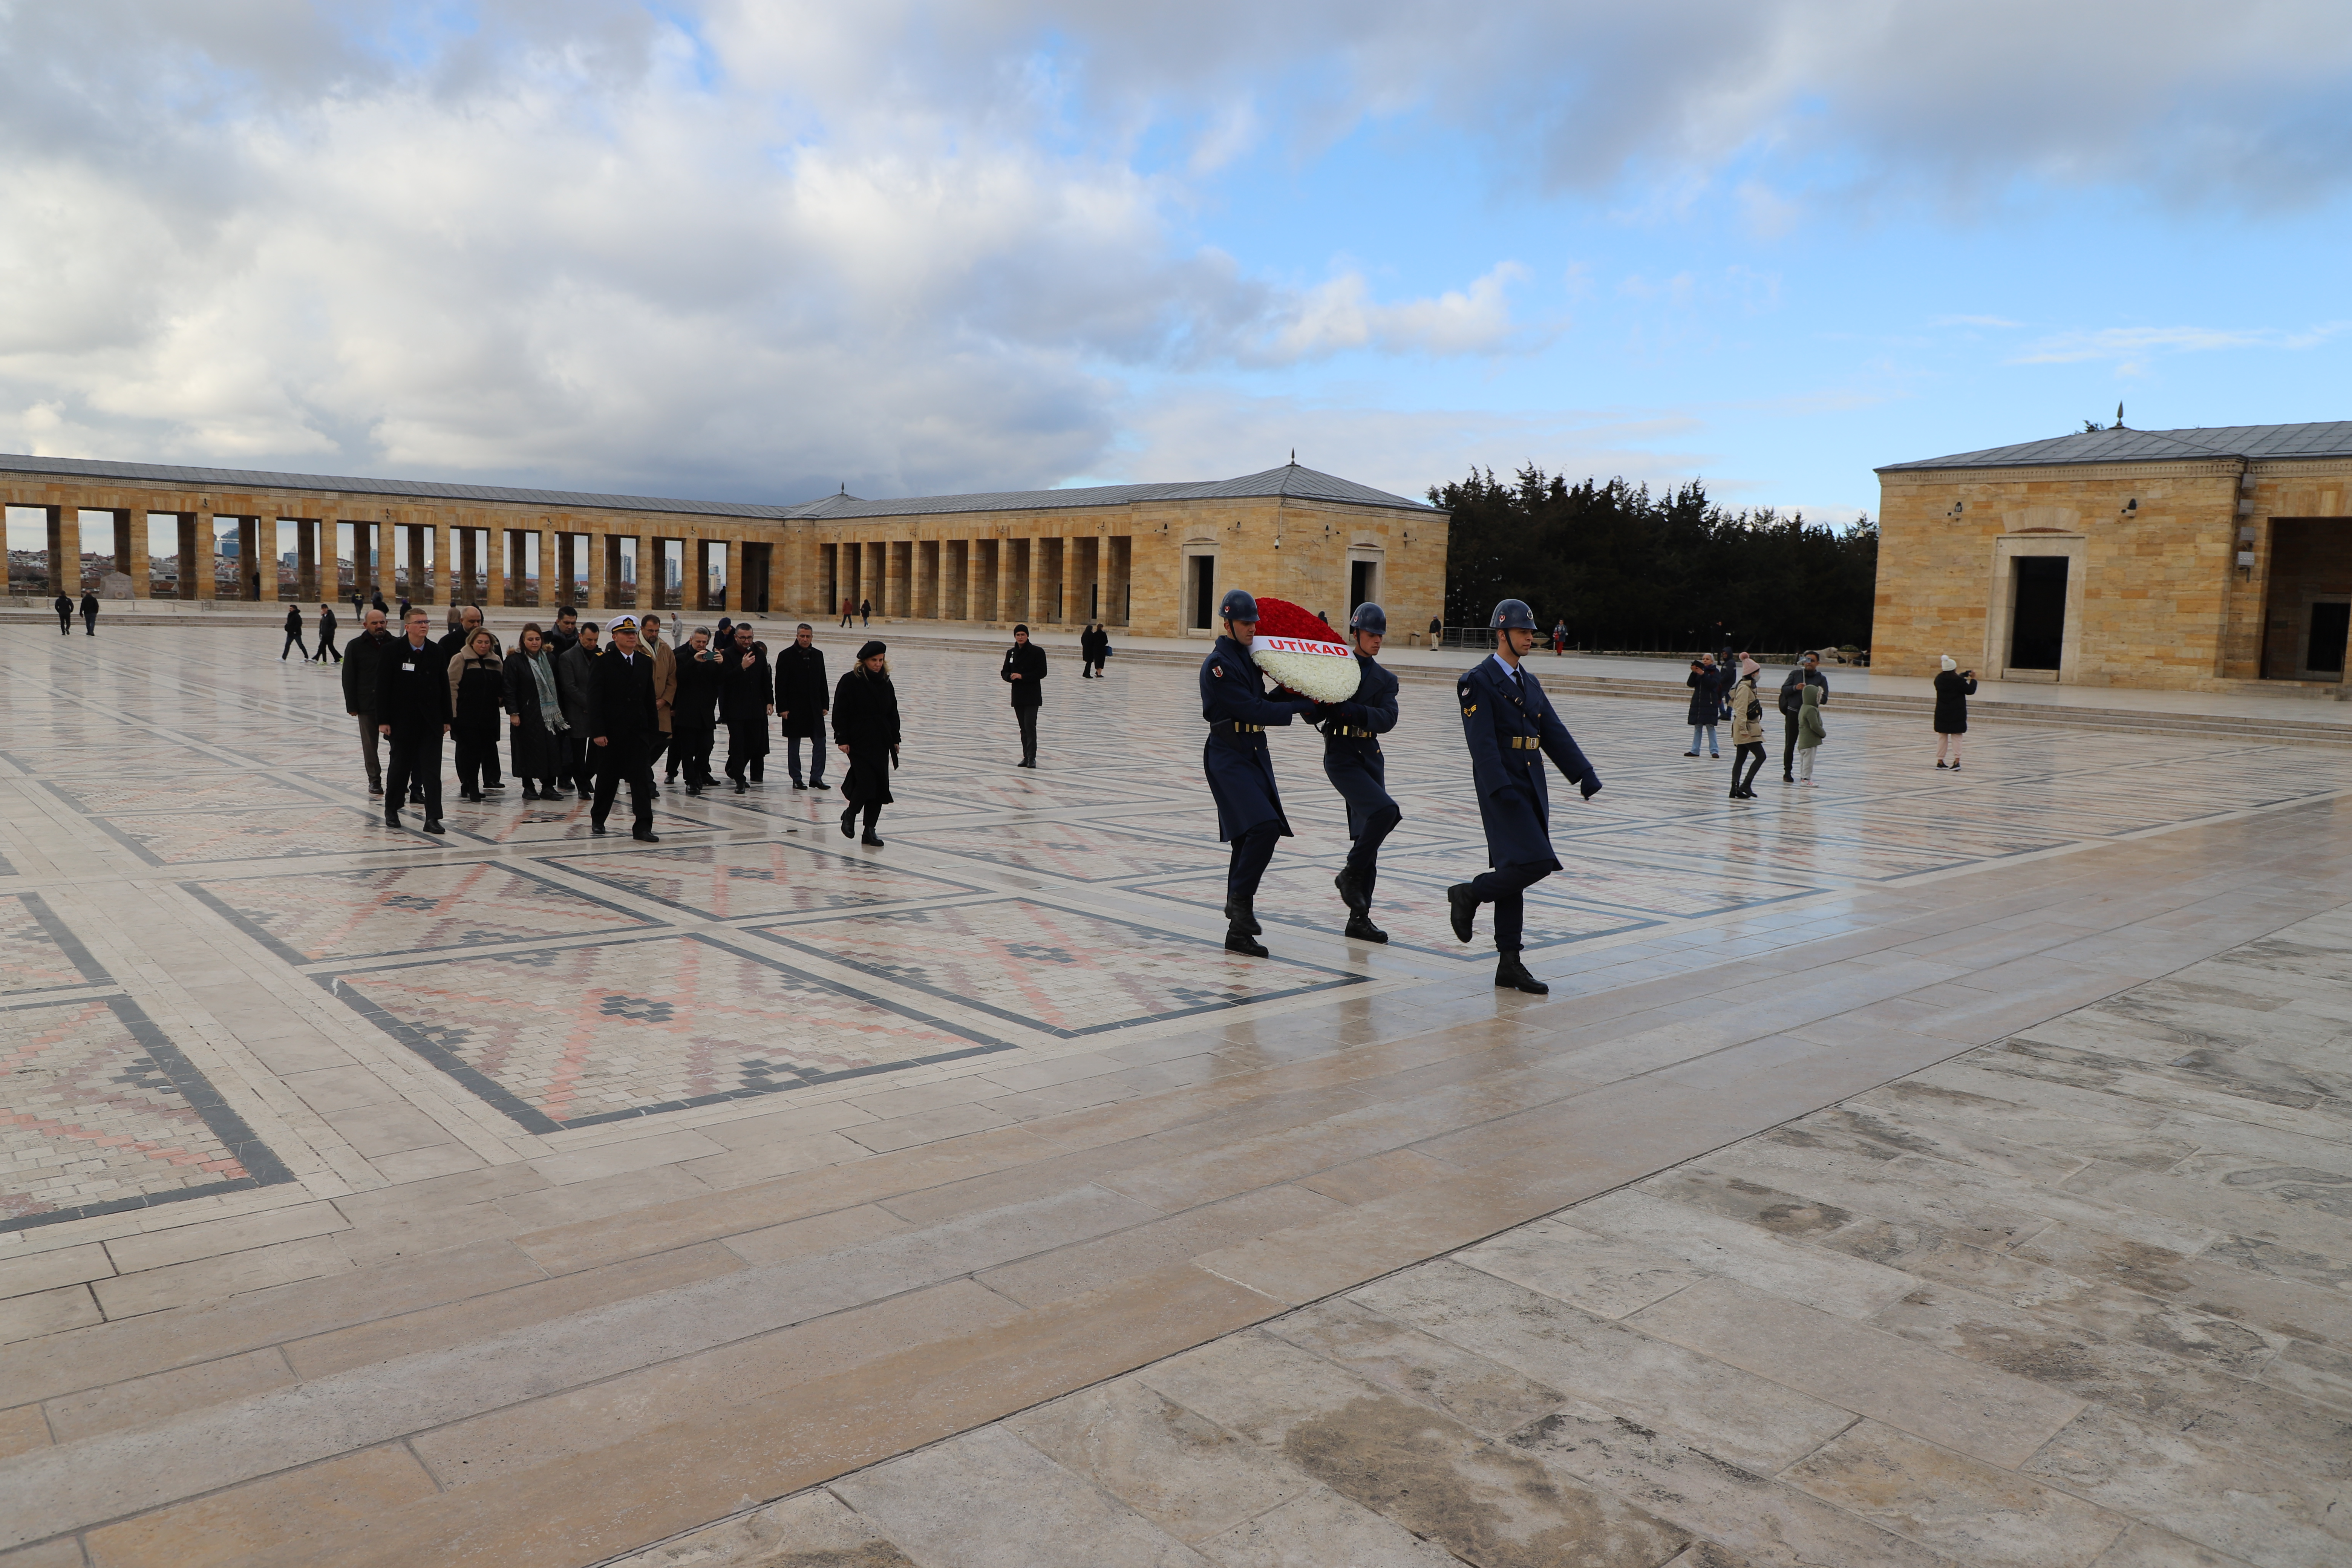 UTİKAD Anıtkabir Ziyareti ve Ankara Üye Buluşması 21.12.2022